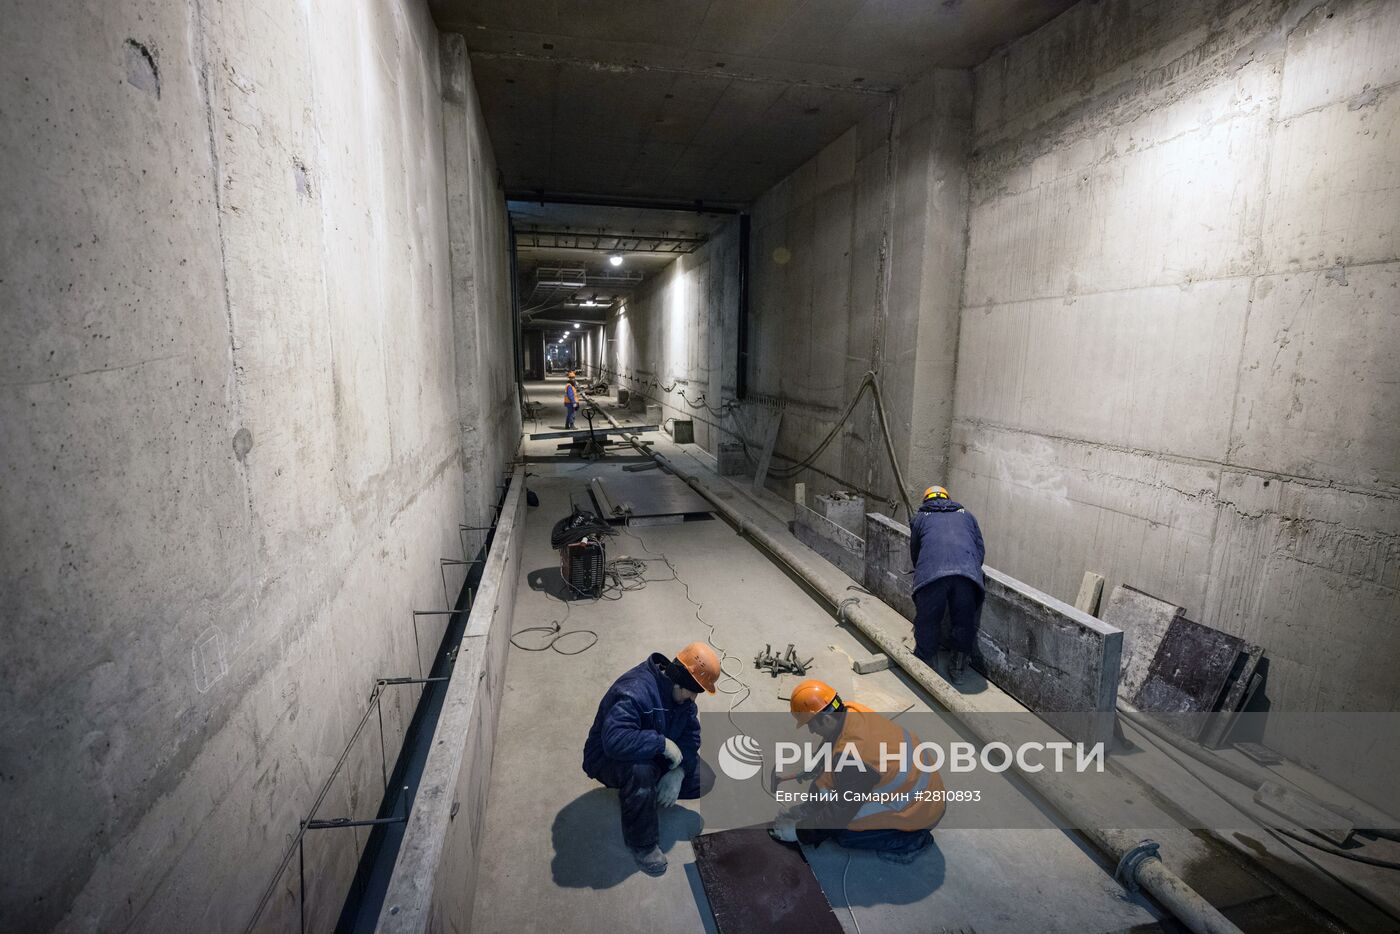 Мэр Москвы С.Собянин посетил строящуюся станцию метро "Деловой центр"